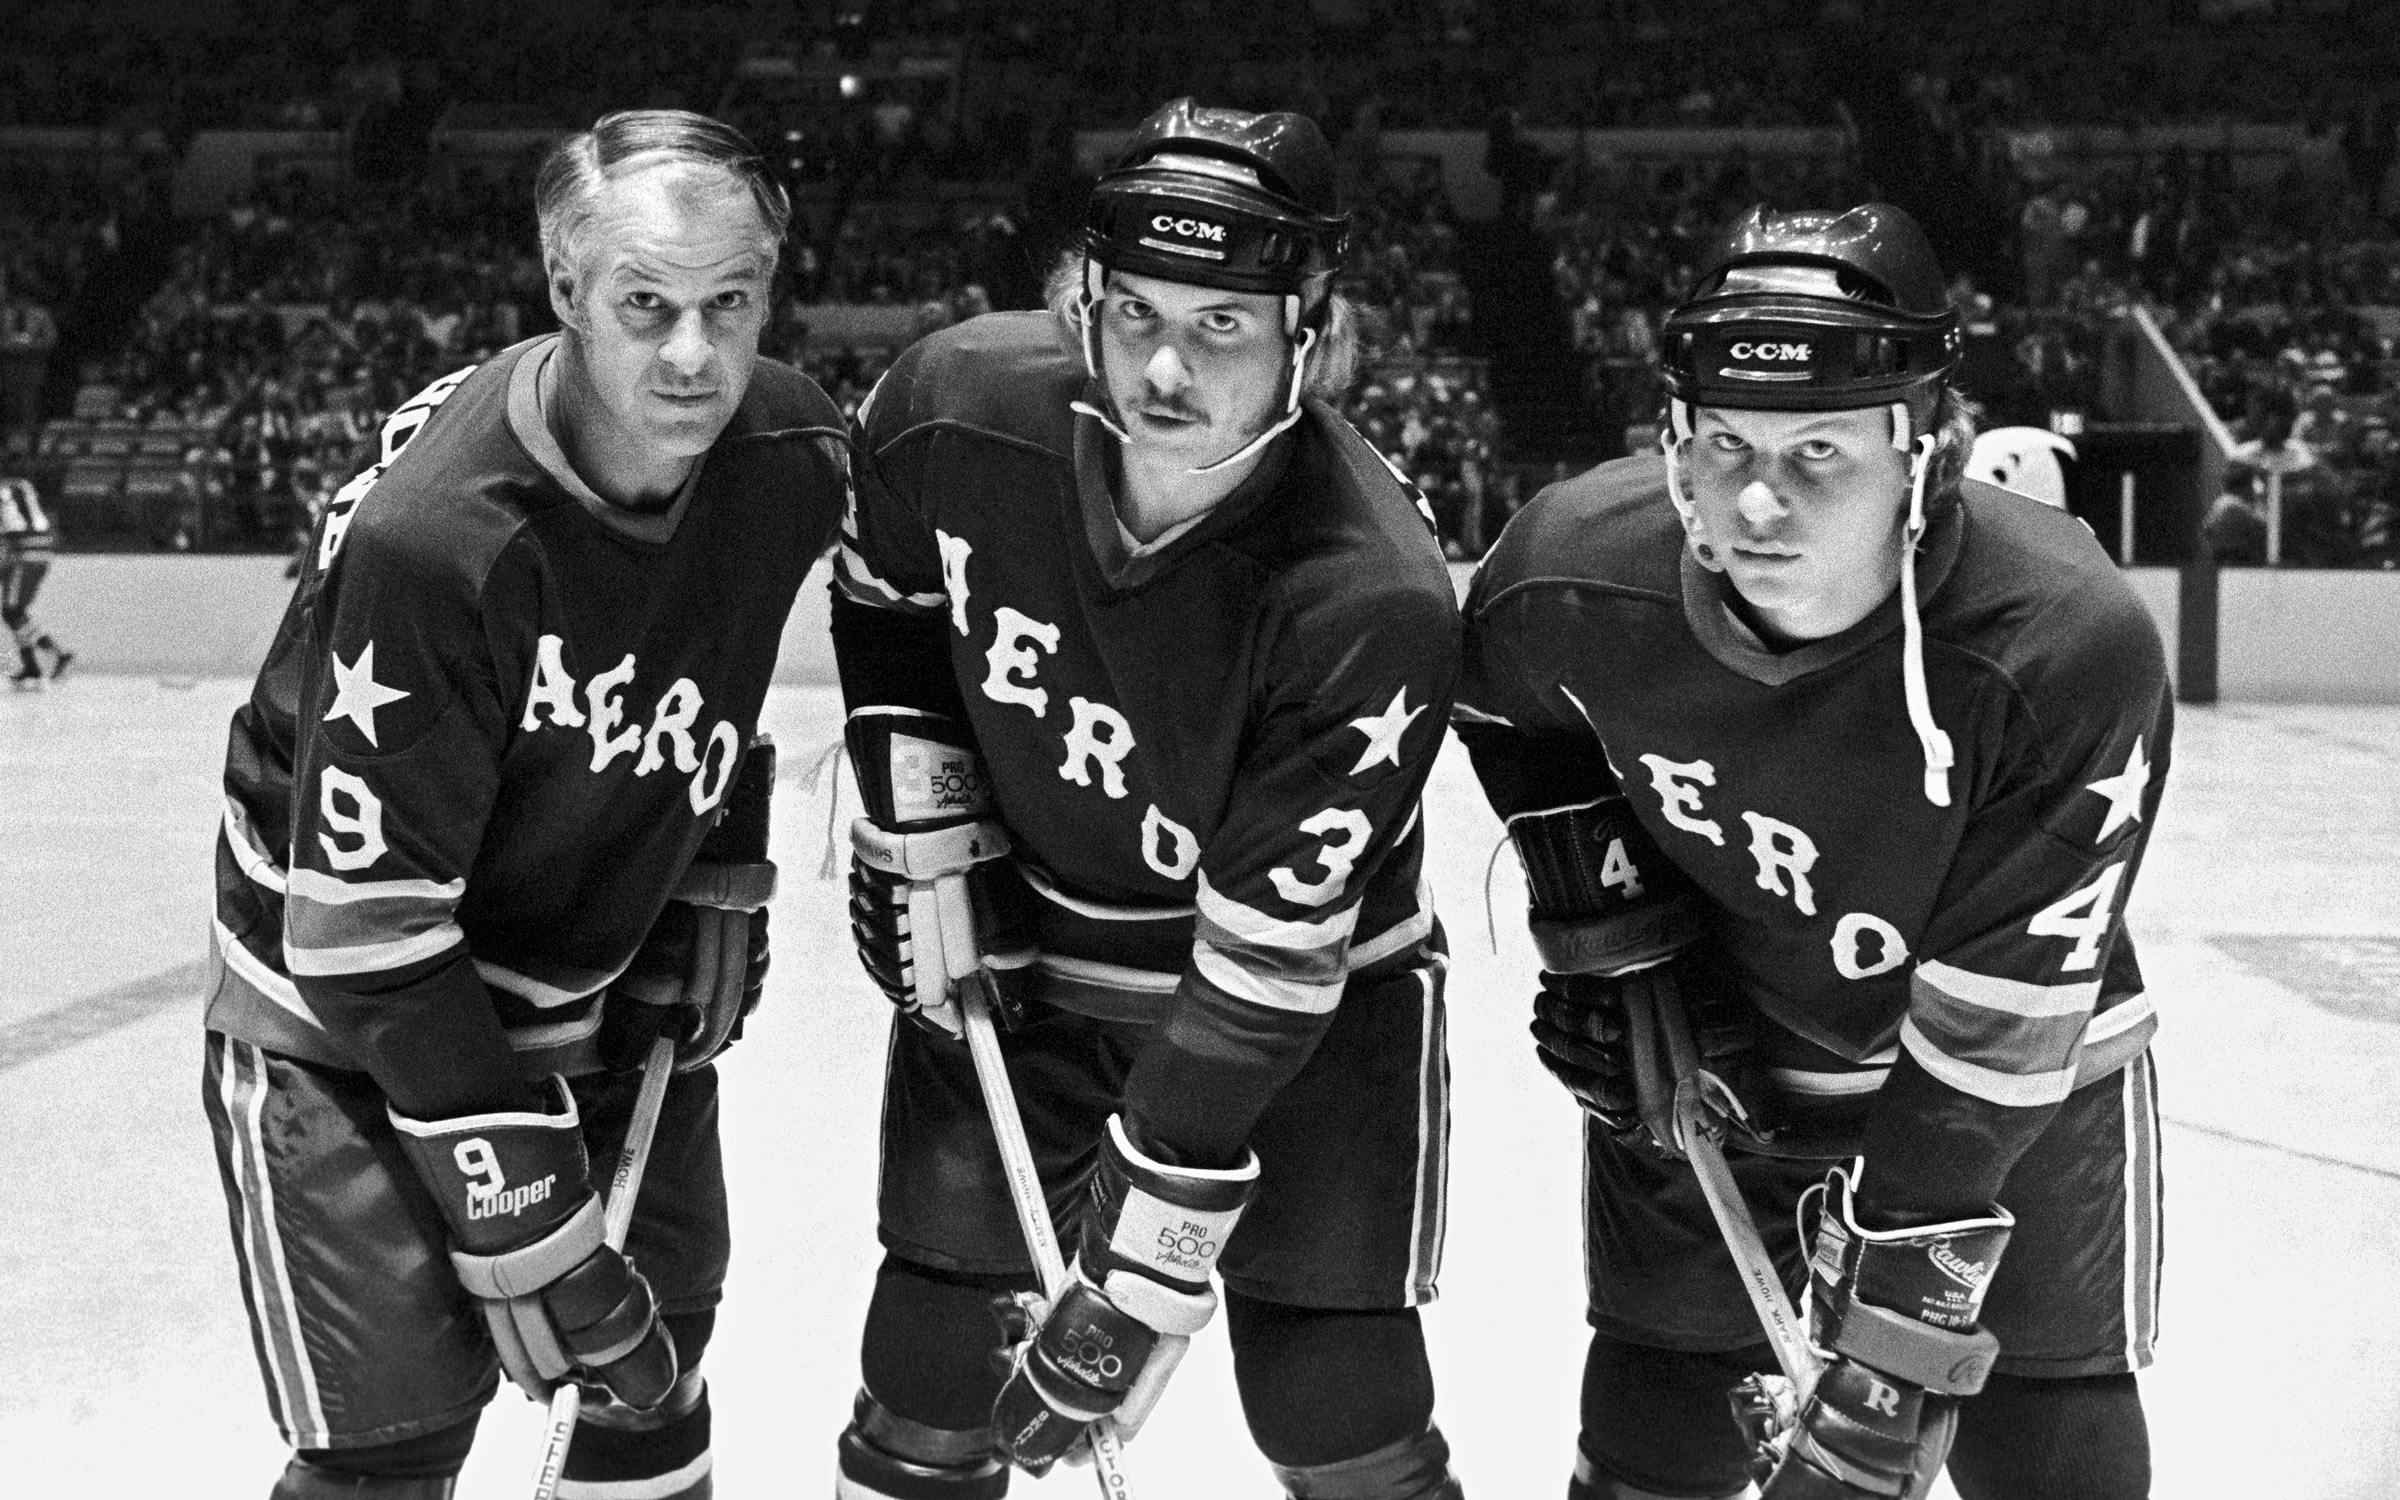 When Hockey Great Gordie Howe Turned Houston Into “Howeston”